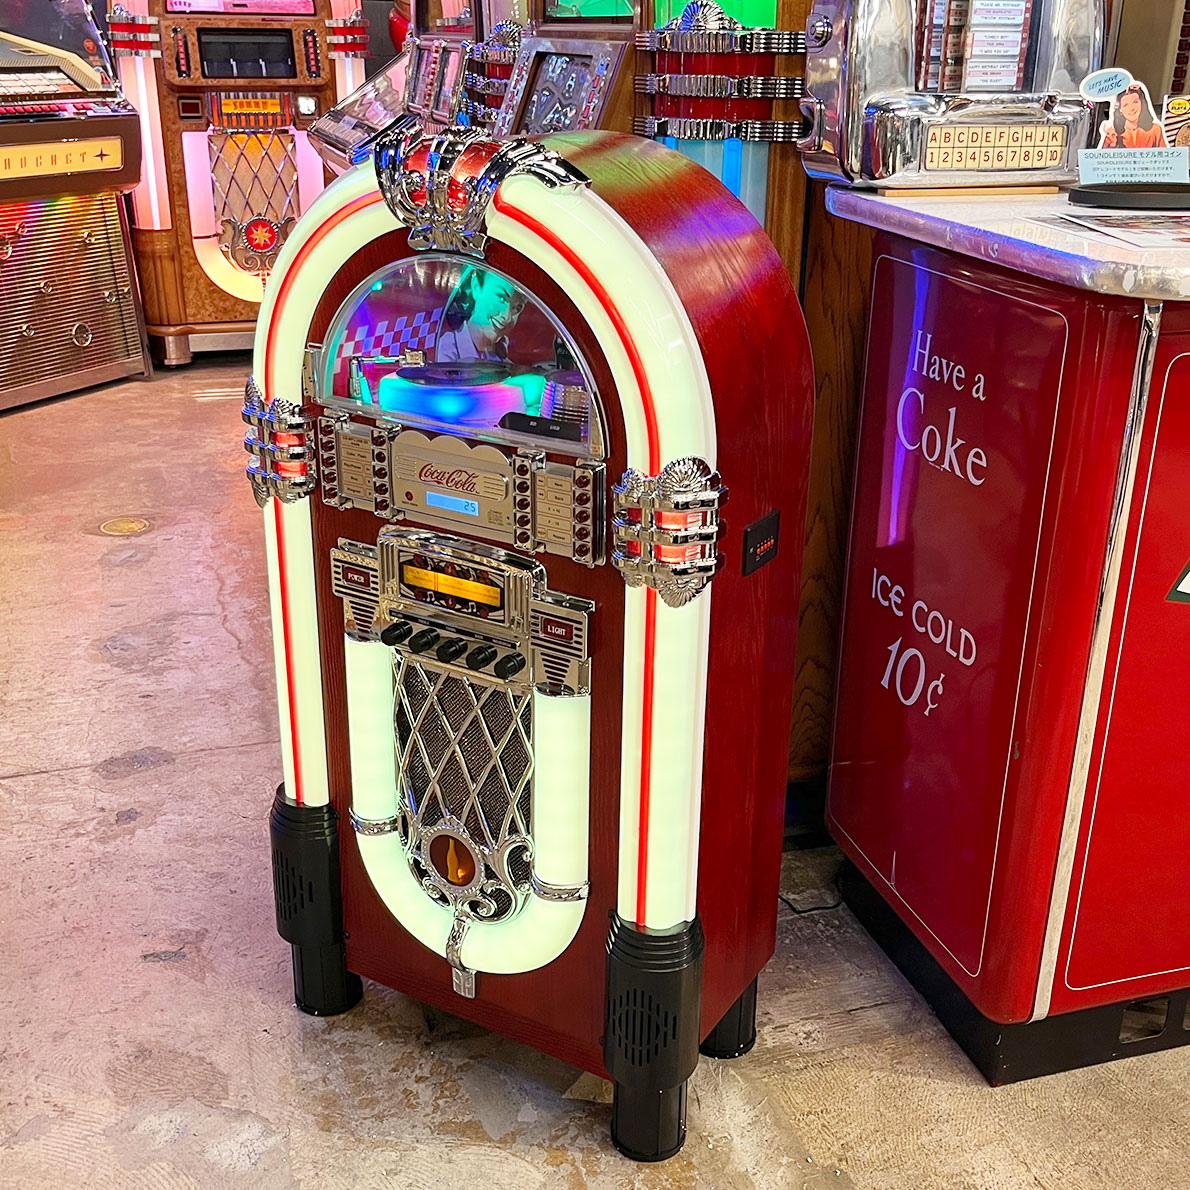 Coca Cola jukebox (カセットラジオのみ)ラジカセ - ラジオ・コンポ